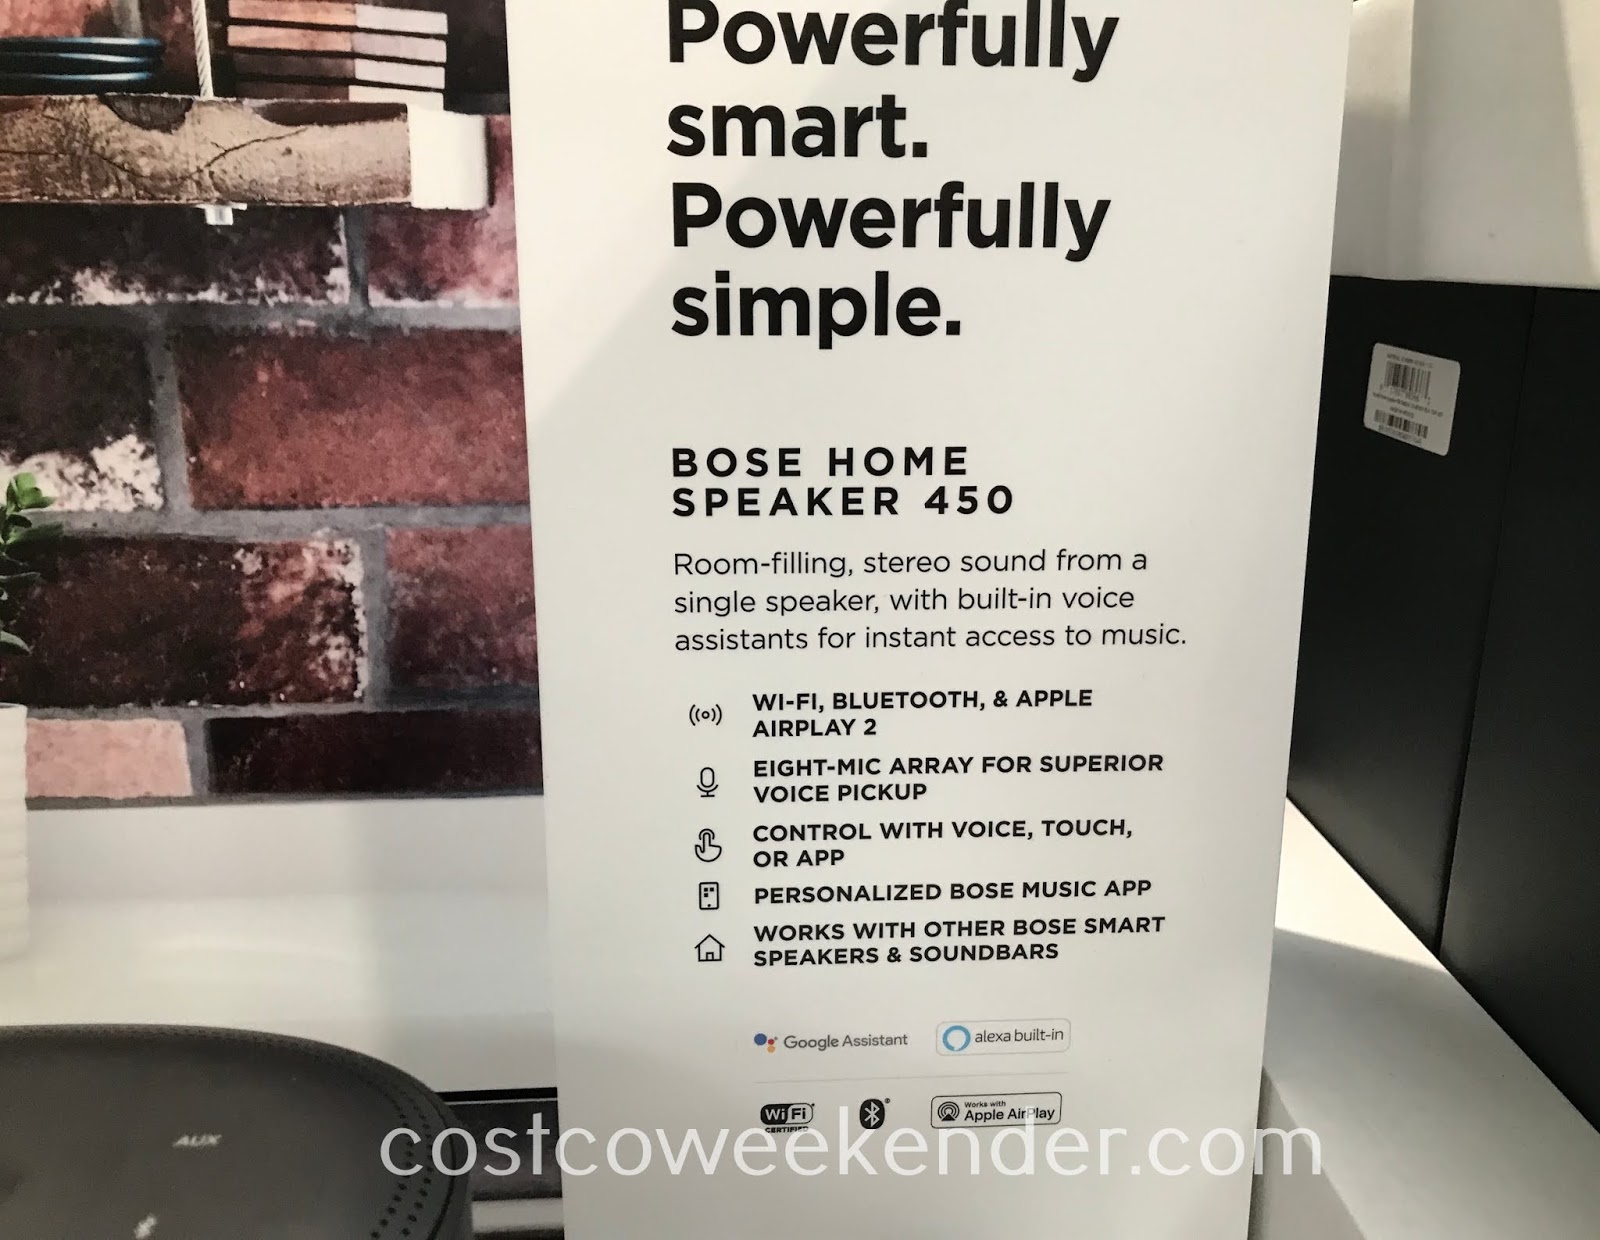 Bose Home Speaker 450 | Costco Weekender